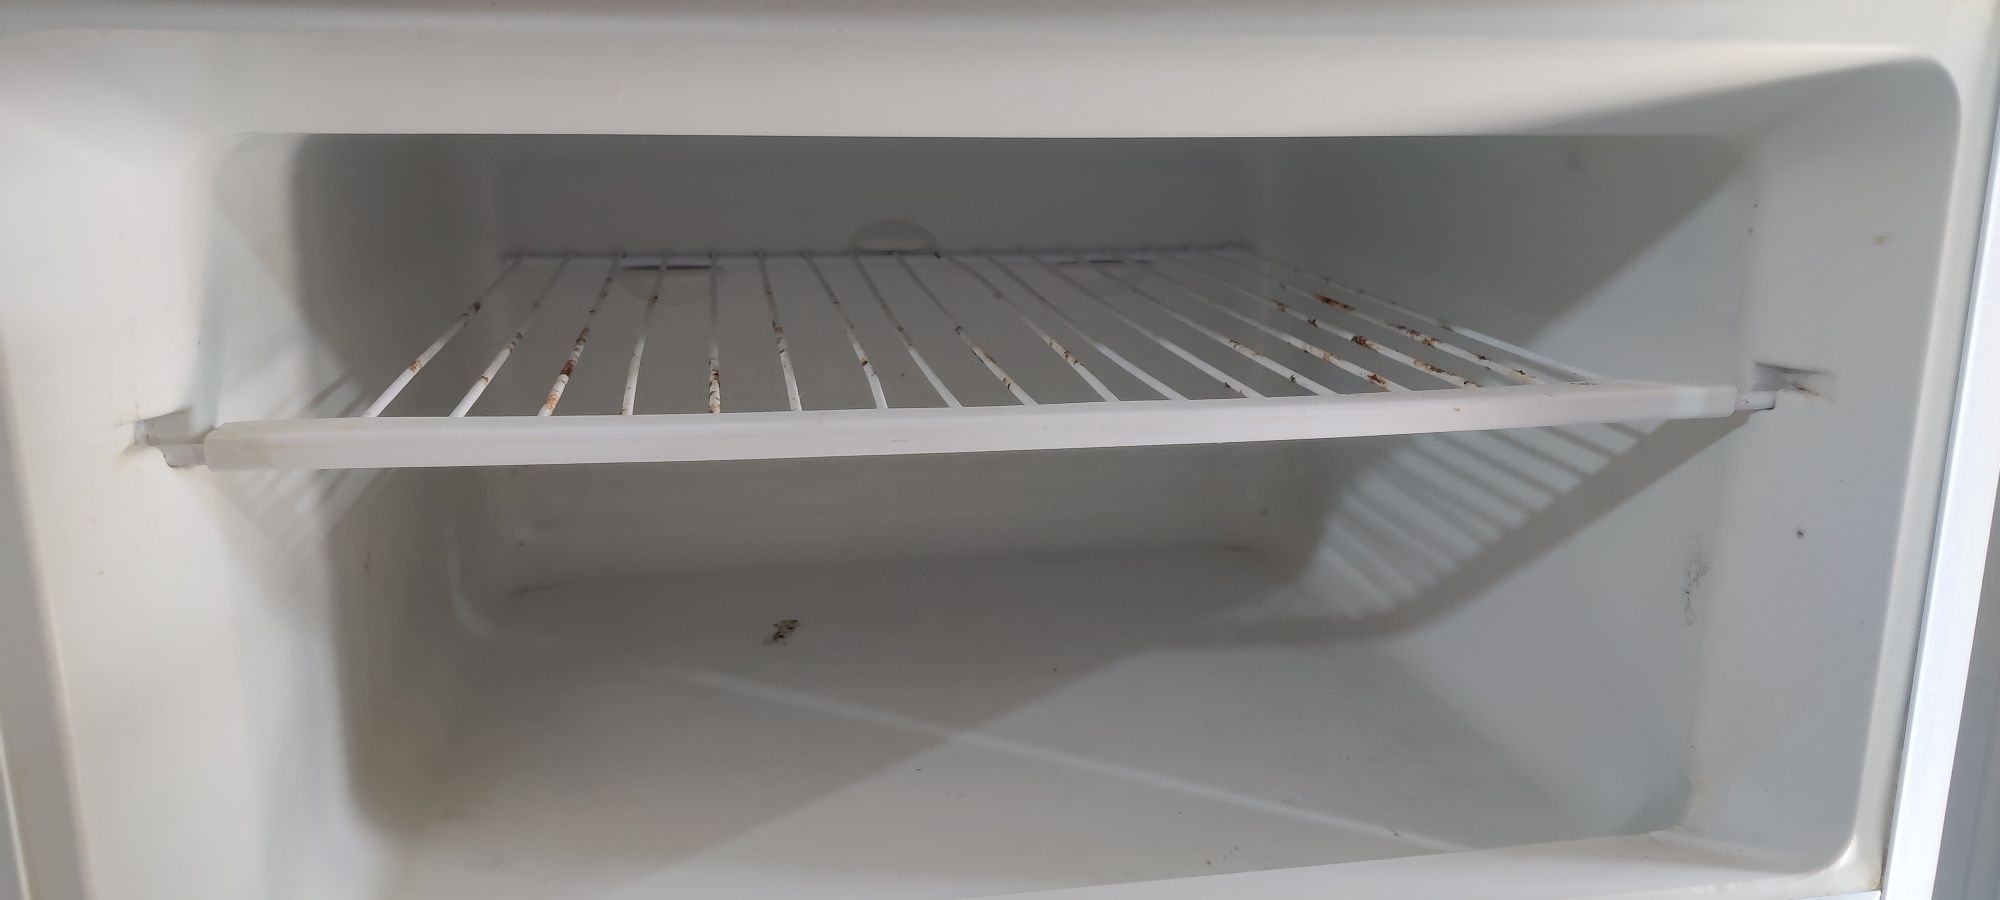 Продам холодильник NORD под ремонт, замена компрессора